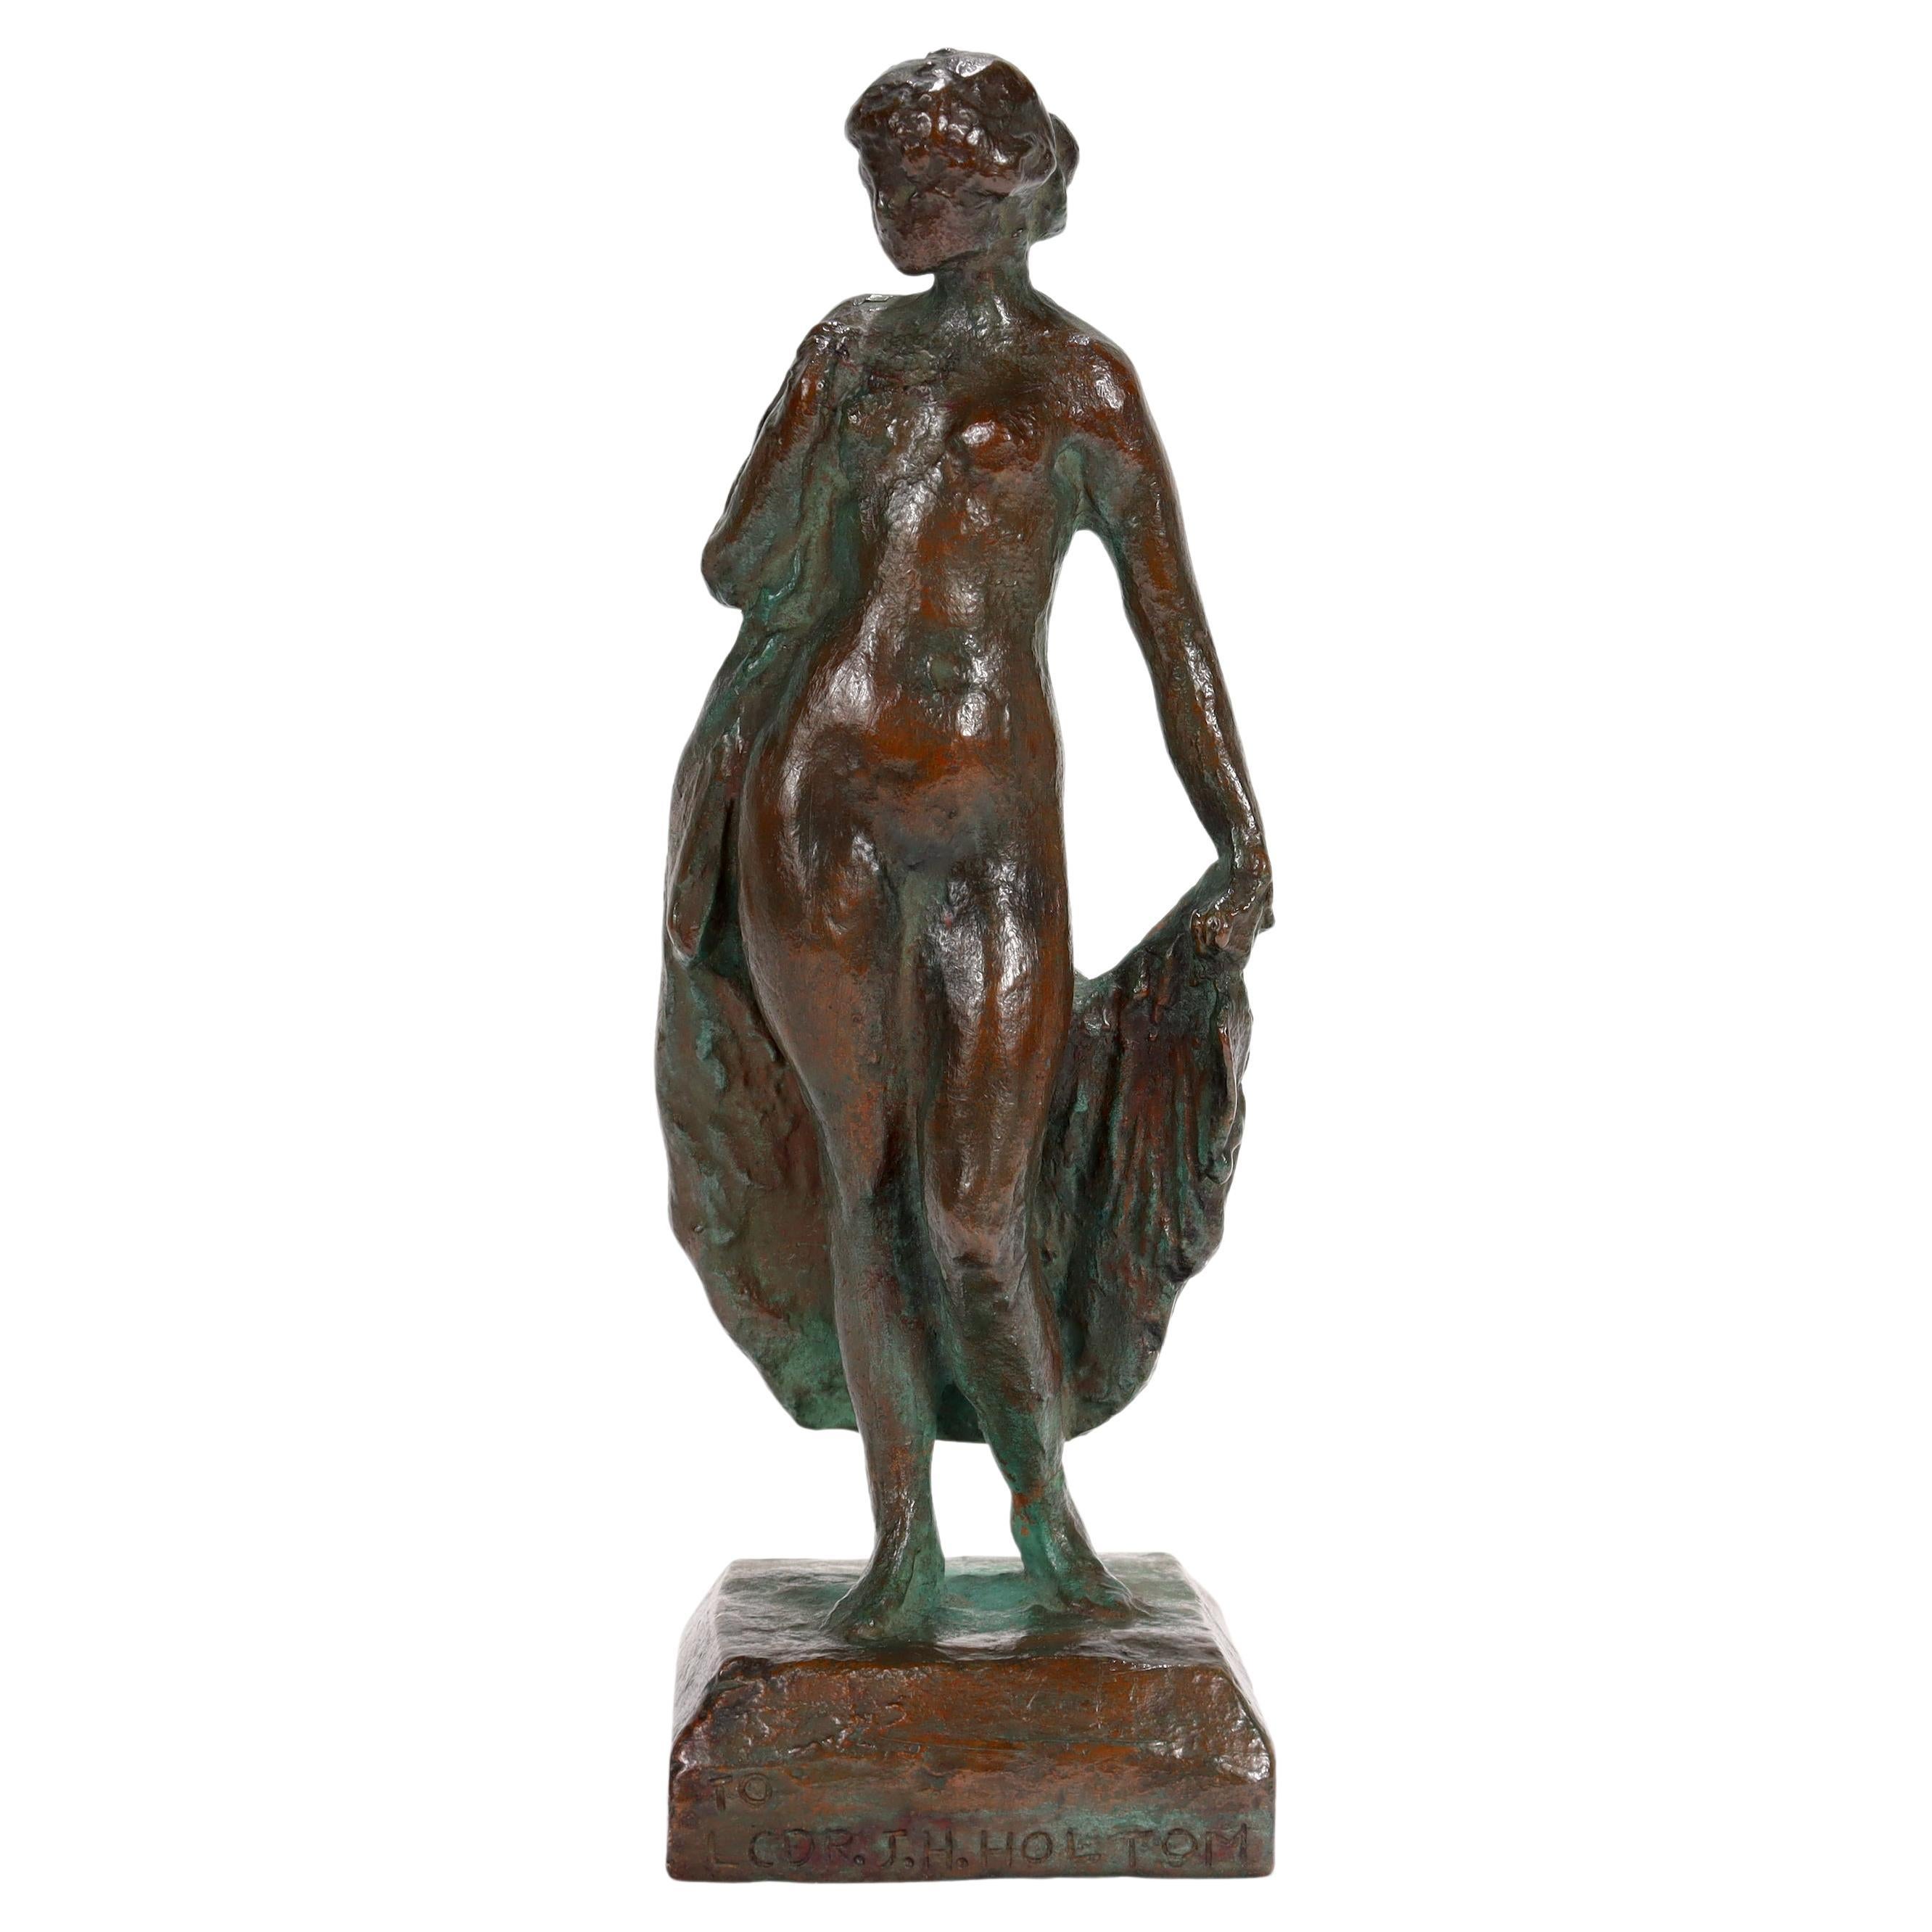 Gozo Kawamura Bronze Sculpture of "Summer", a Nude Woman